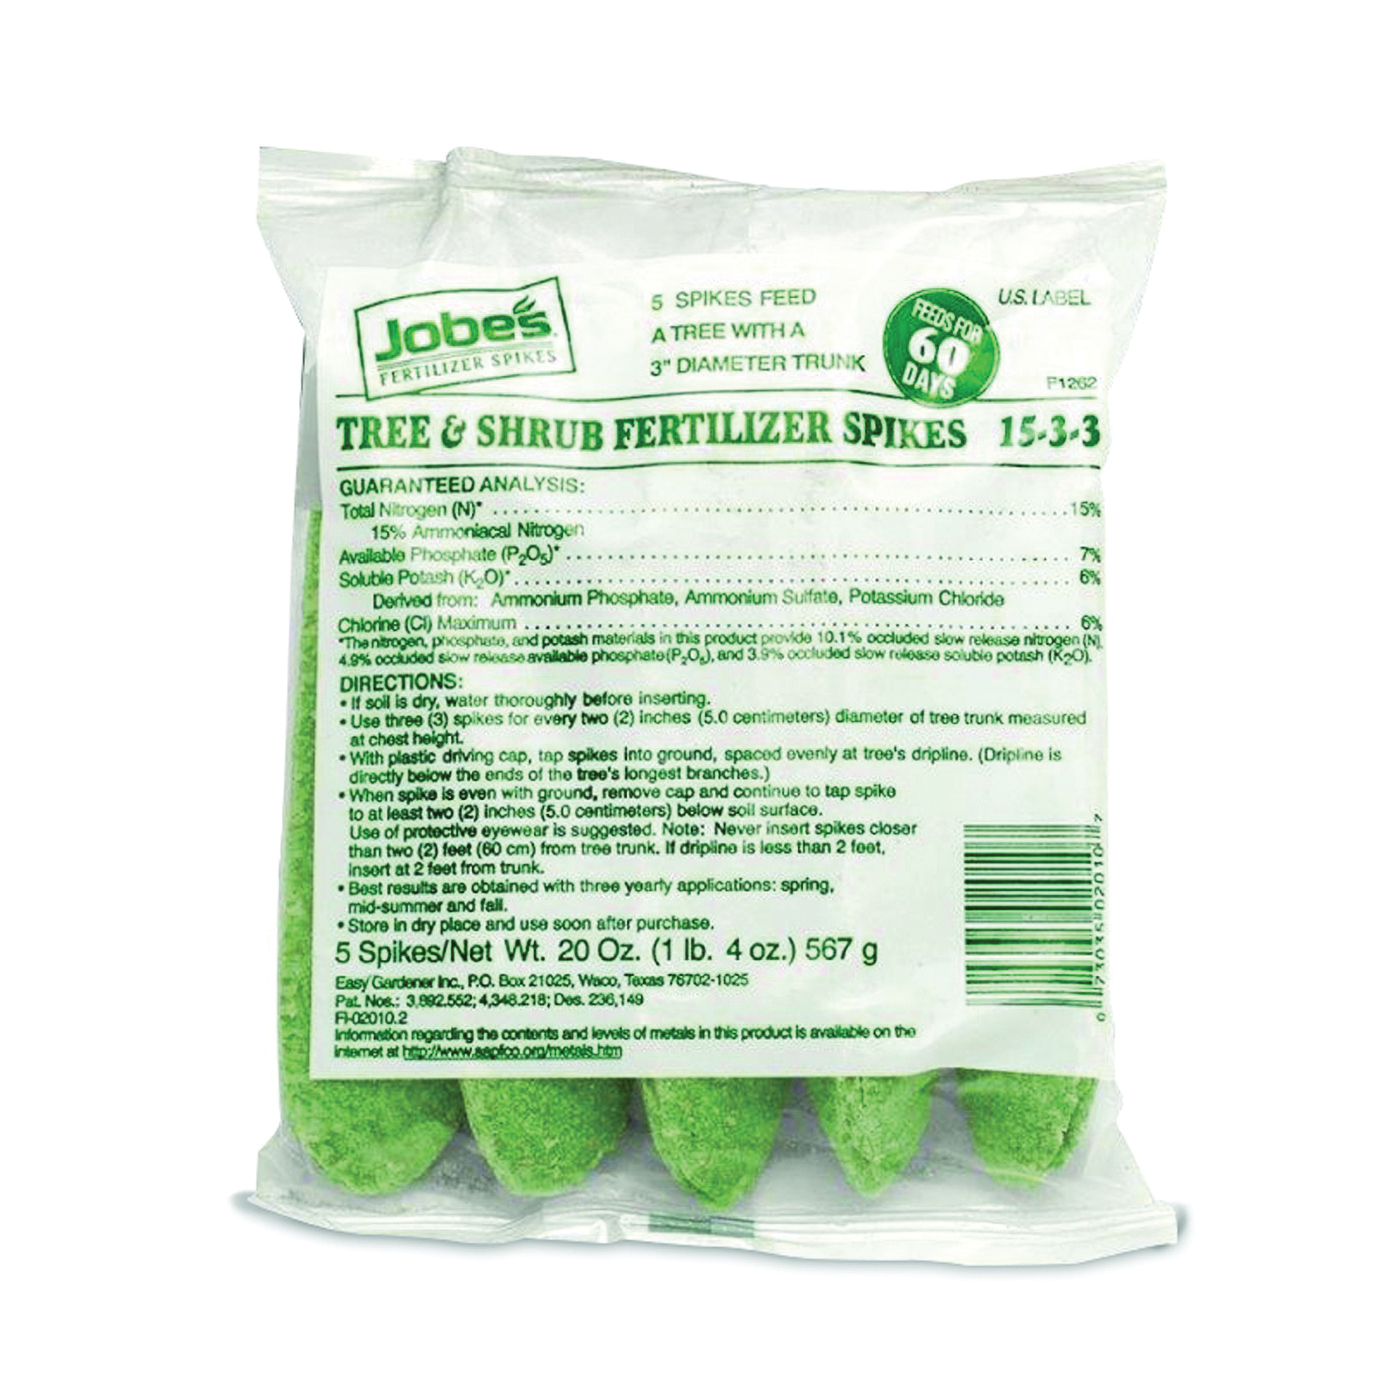 02010 Fertilizer Spike Bag, Spike, Light Green, Slight Ammonia Bag